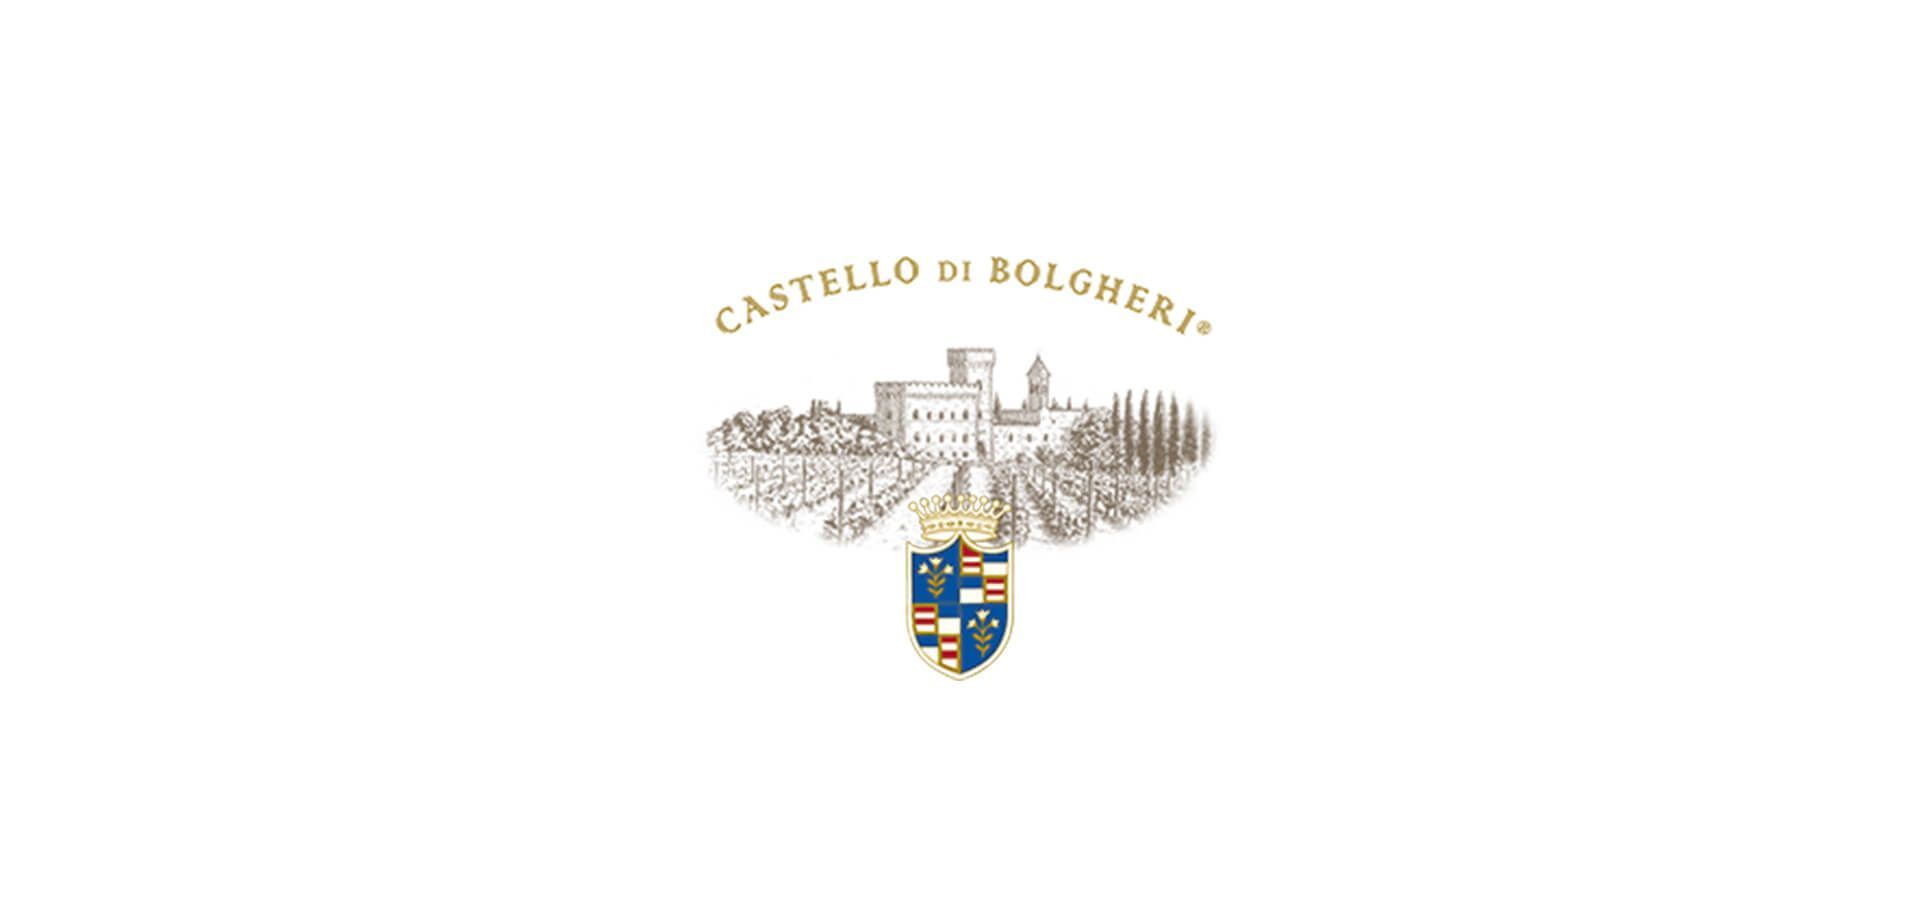 Castello di Bolgheri, Castagneto Carducci